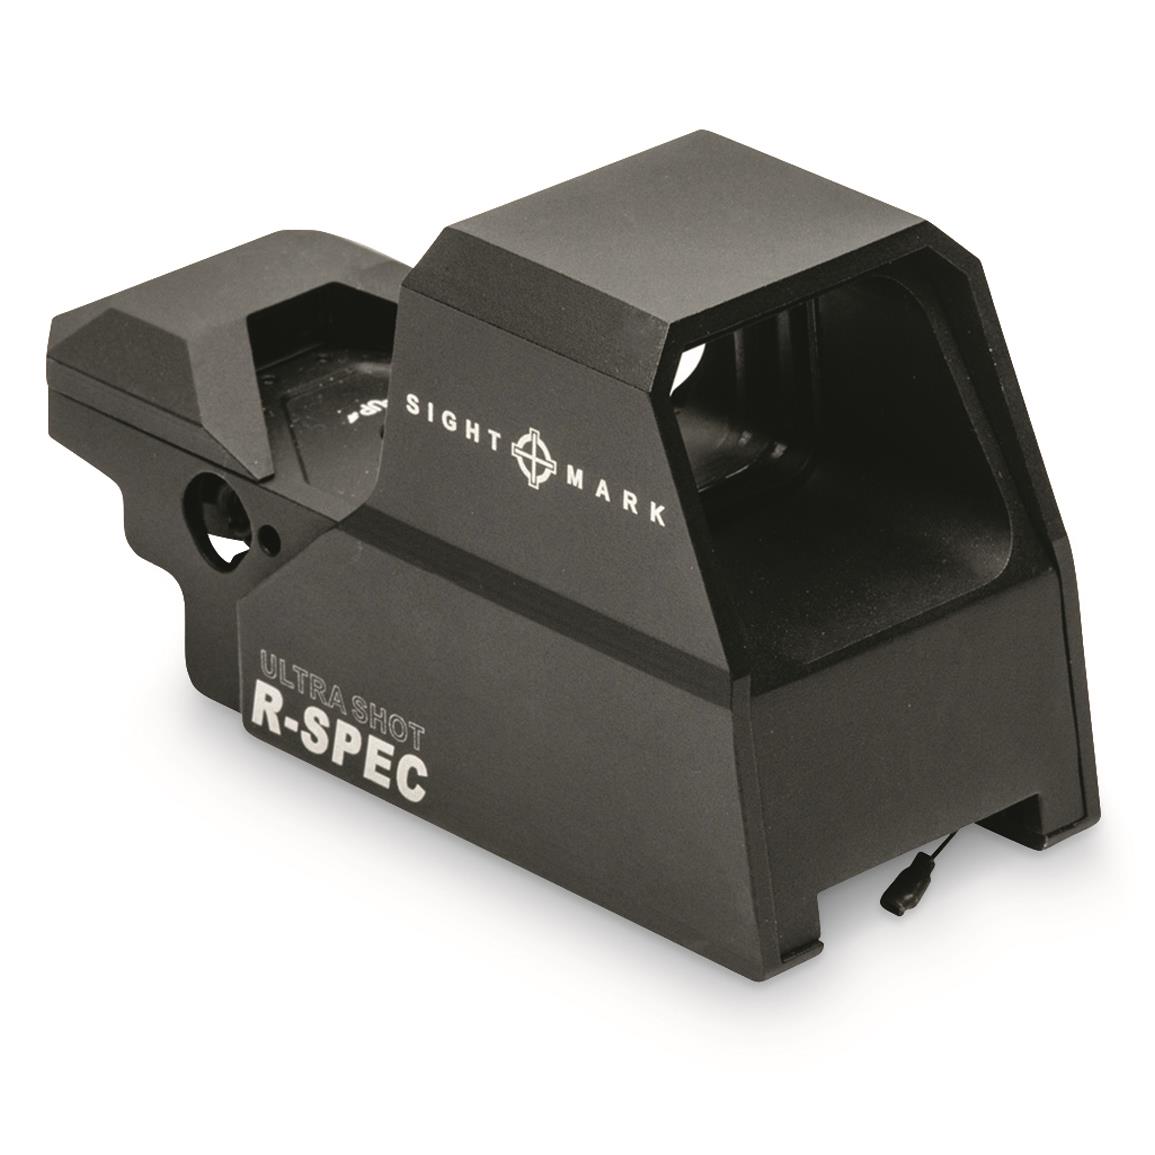 Sightmark Ultra Shot A-Spec/R-Spec Reflex Sight